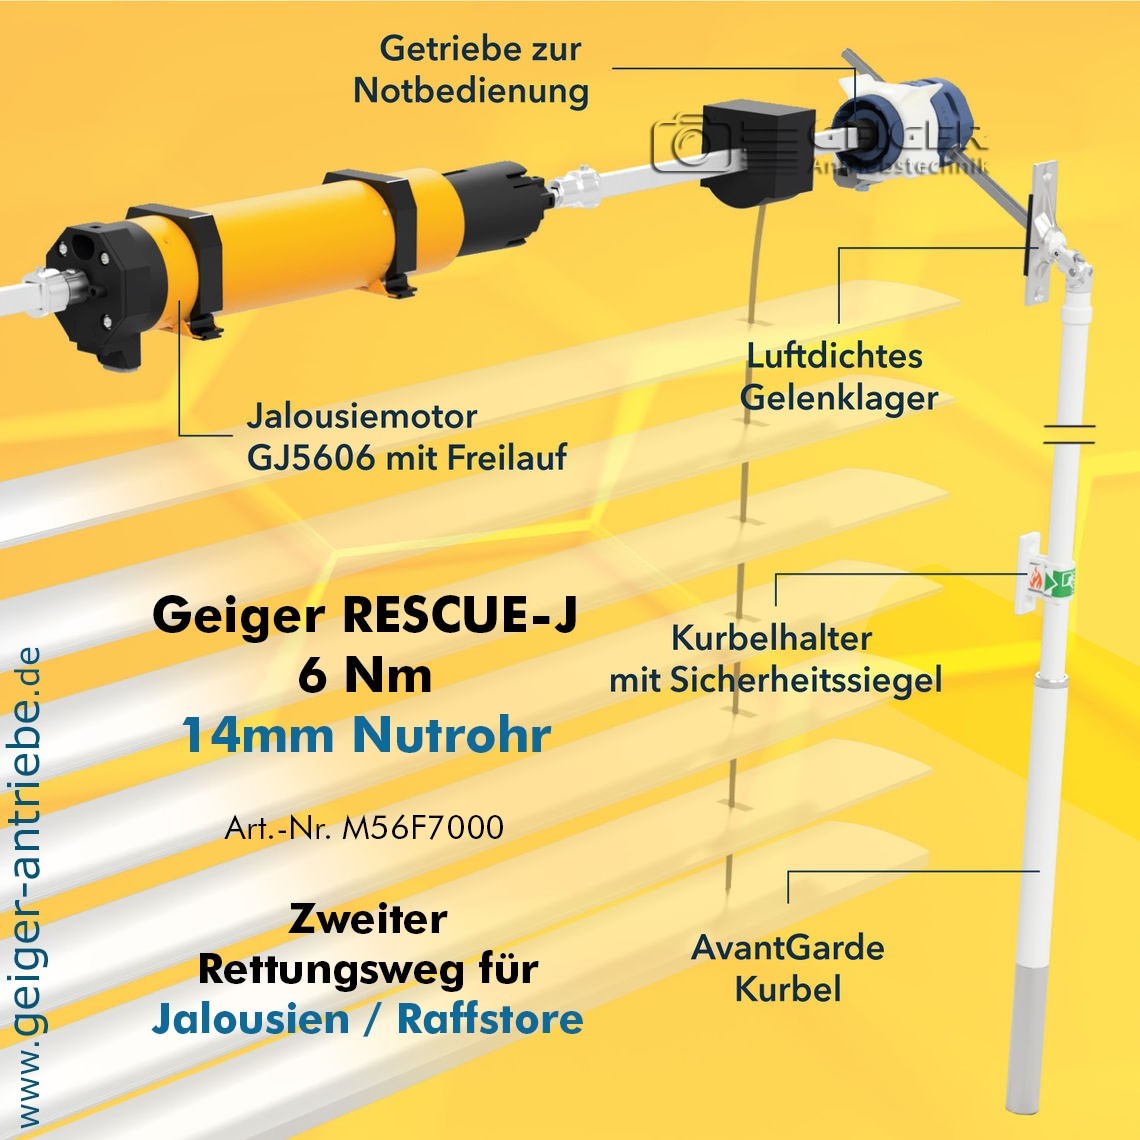 GEIGER RESCUE-J Kit - der 2. Rettungsweg - Jalousie / Raffstore